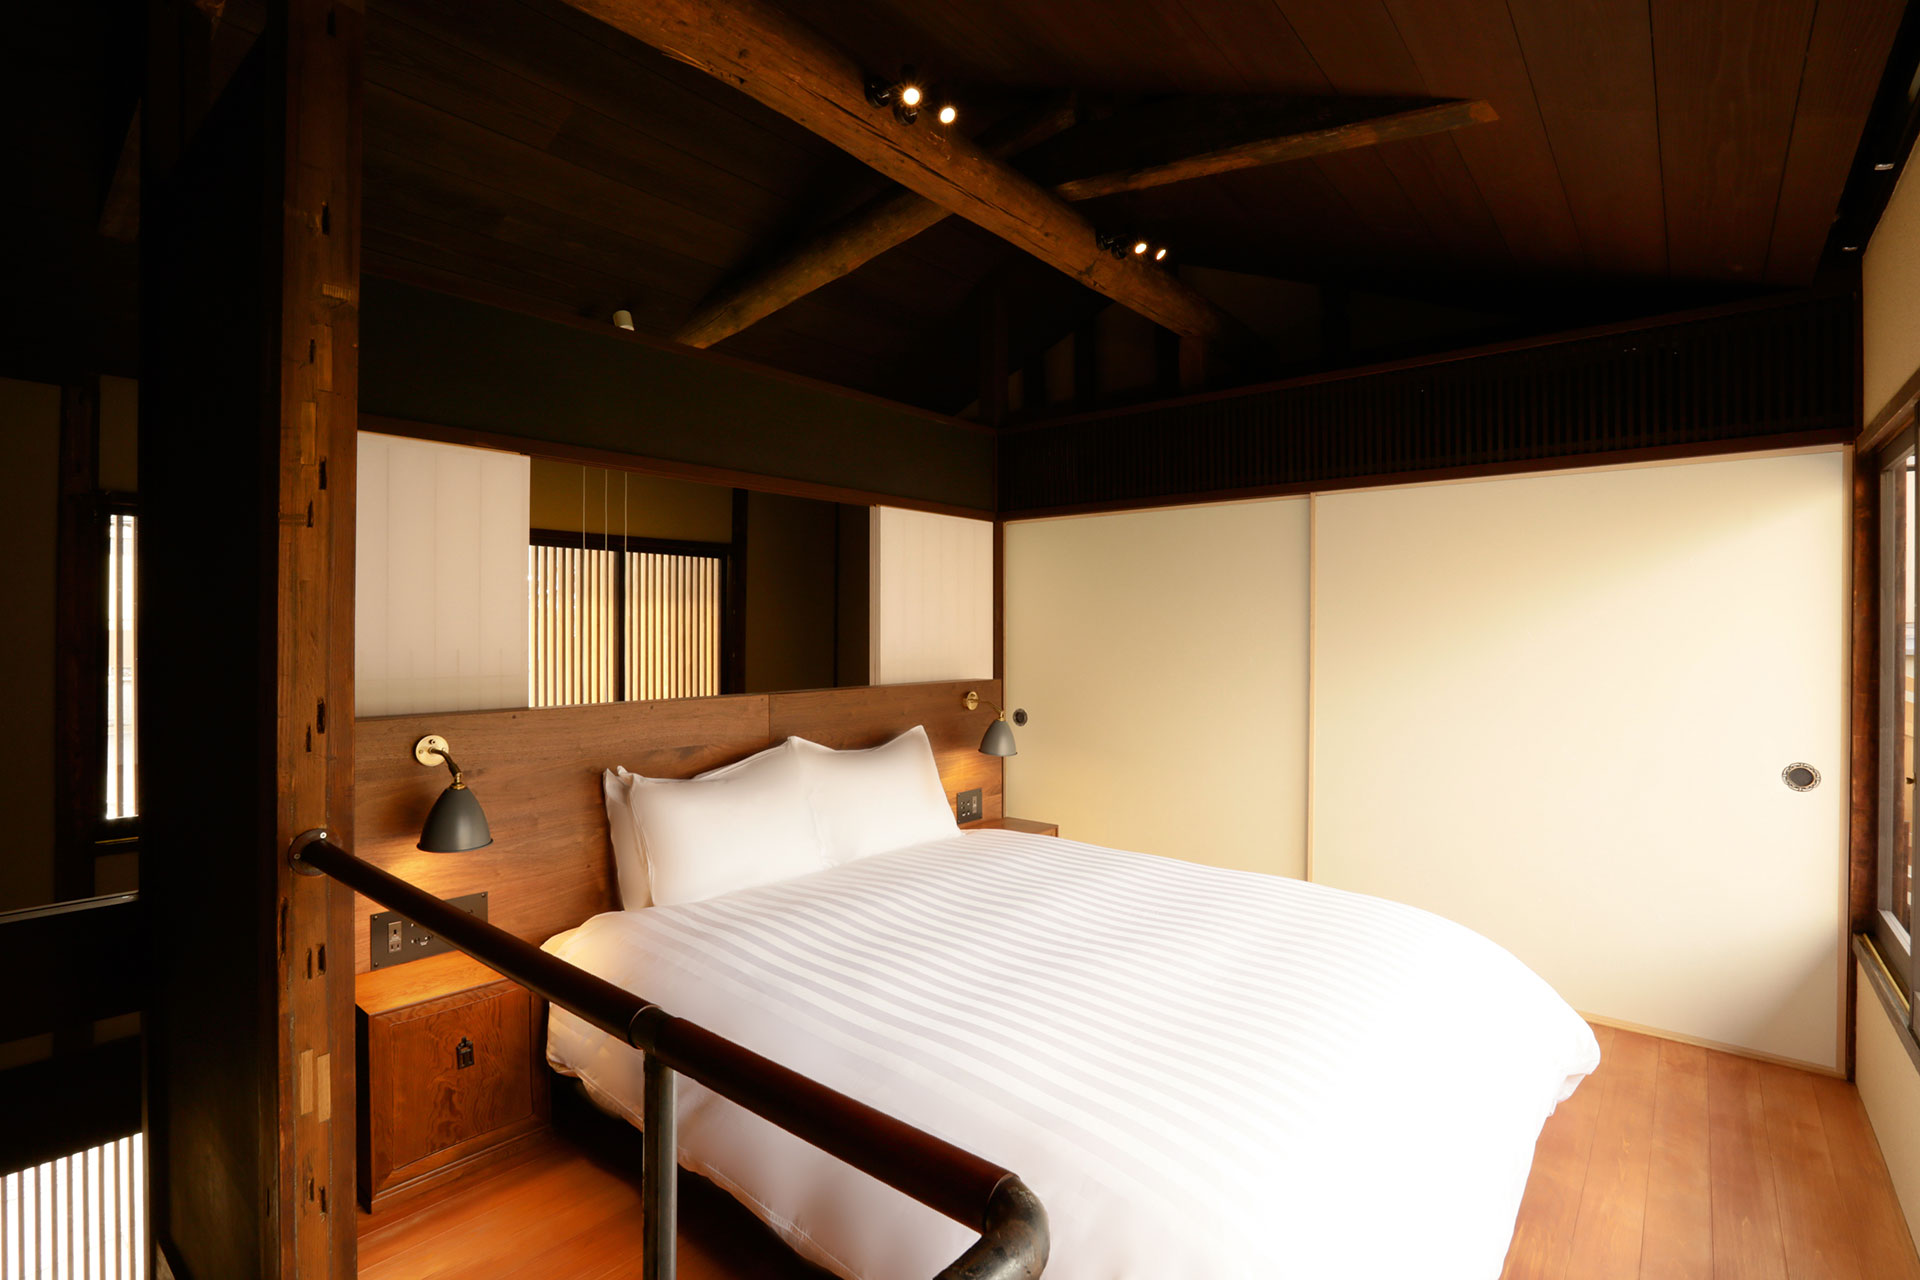 離れ 町家スタイル 111 | 客室詳細 | そわか | SOWAKA | 京都・祇園